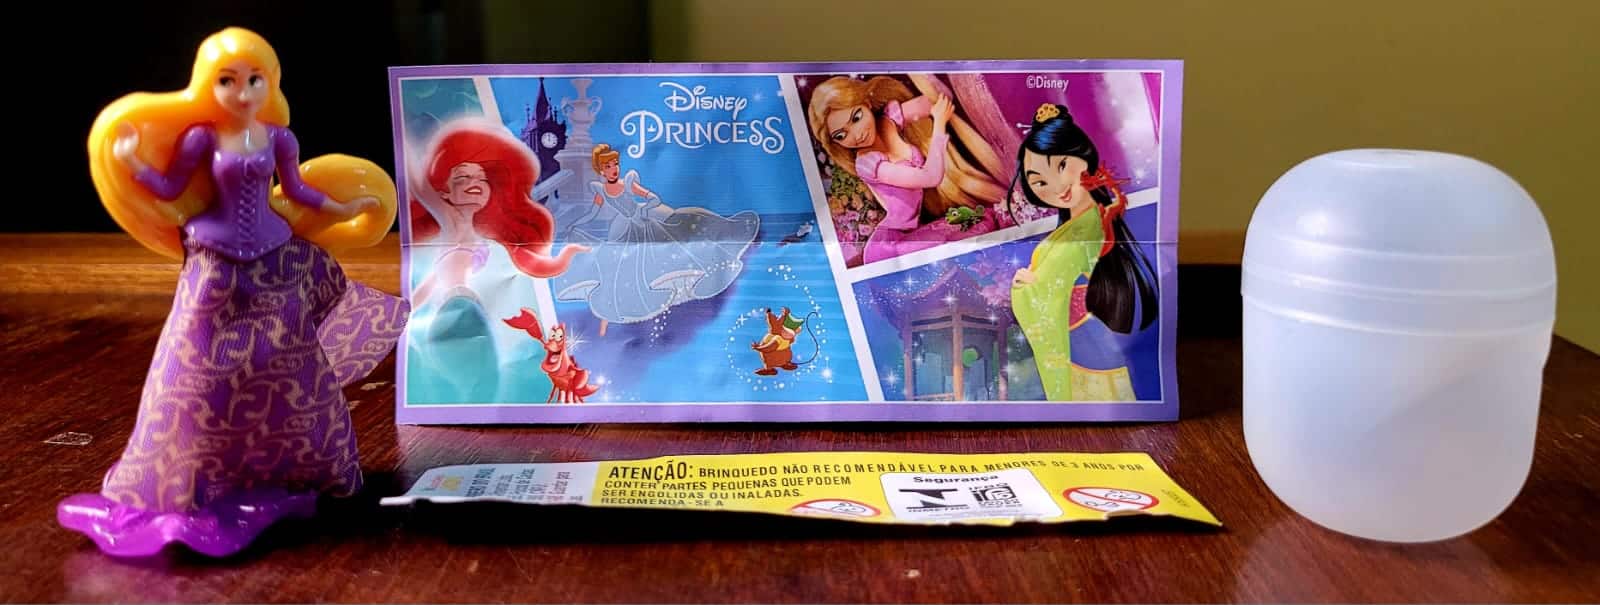 Kinder Ovo EN No 369 Disney Princesas Casa do Colecionador